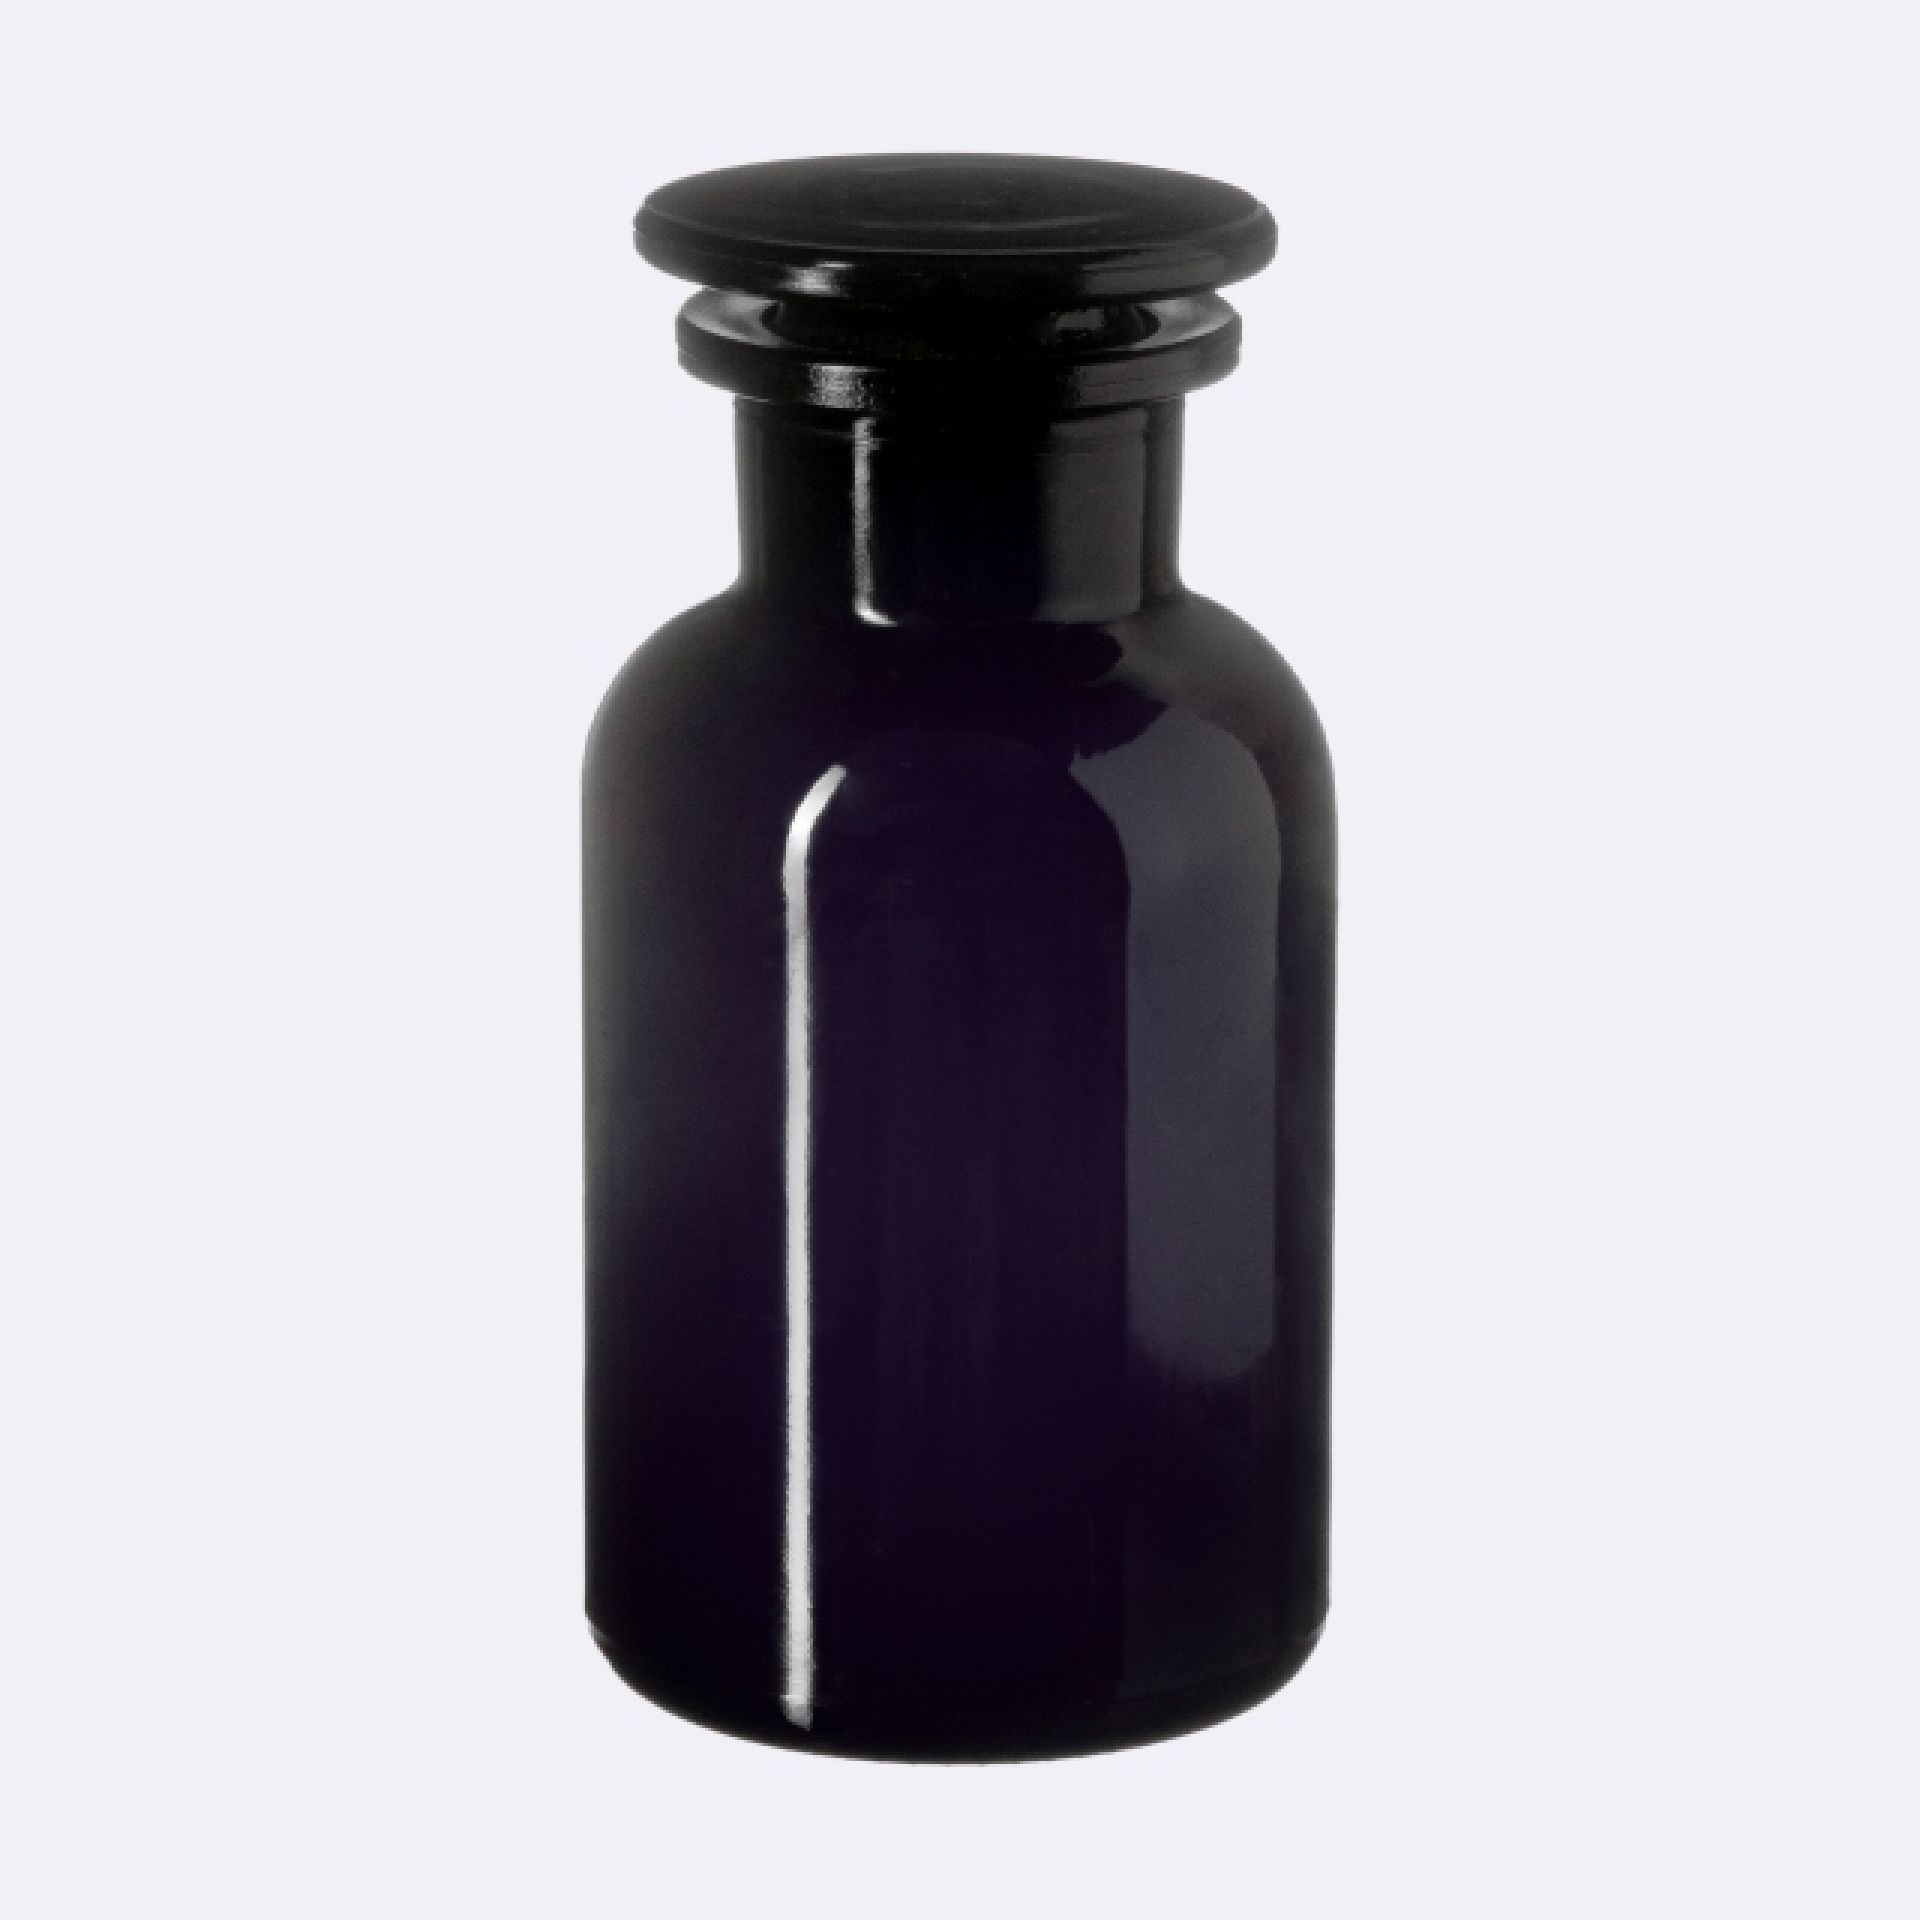 Apothecary jar Libra 100ml, glass stopper, Miron